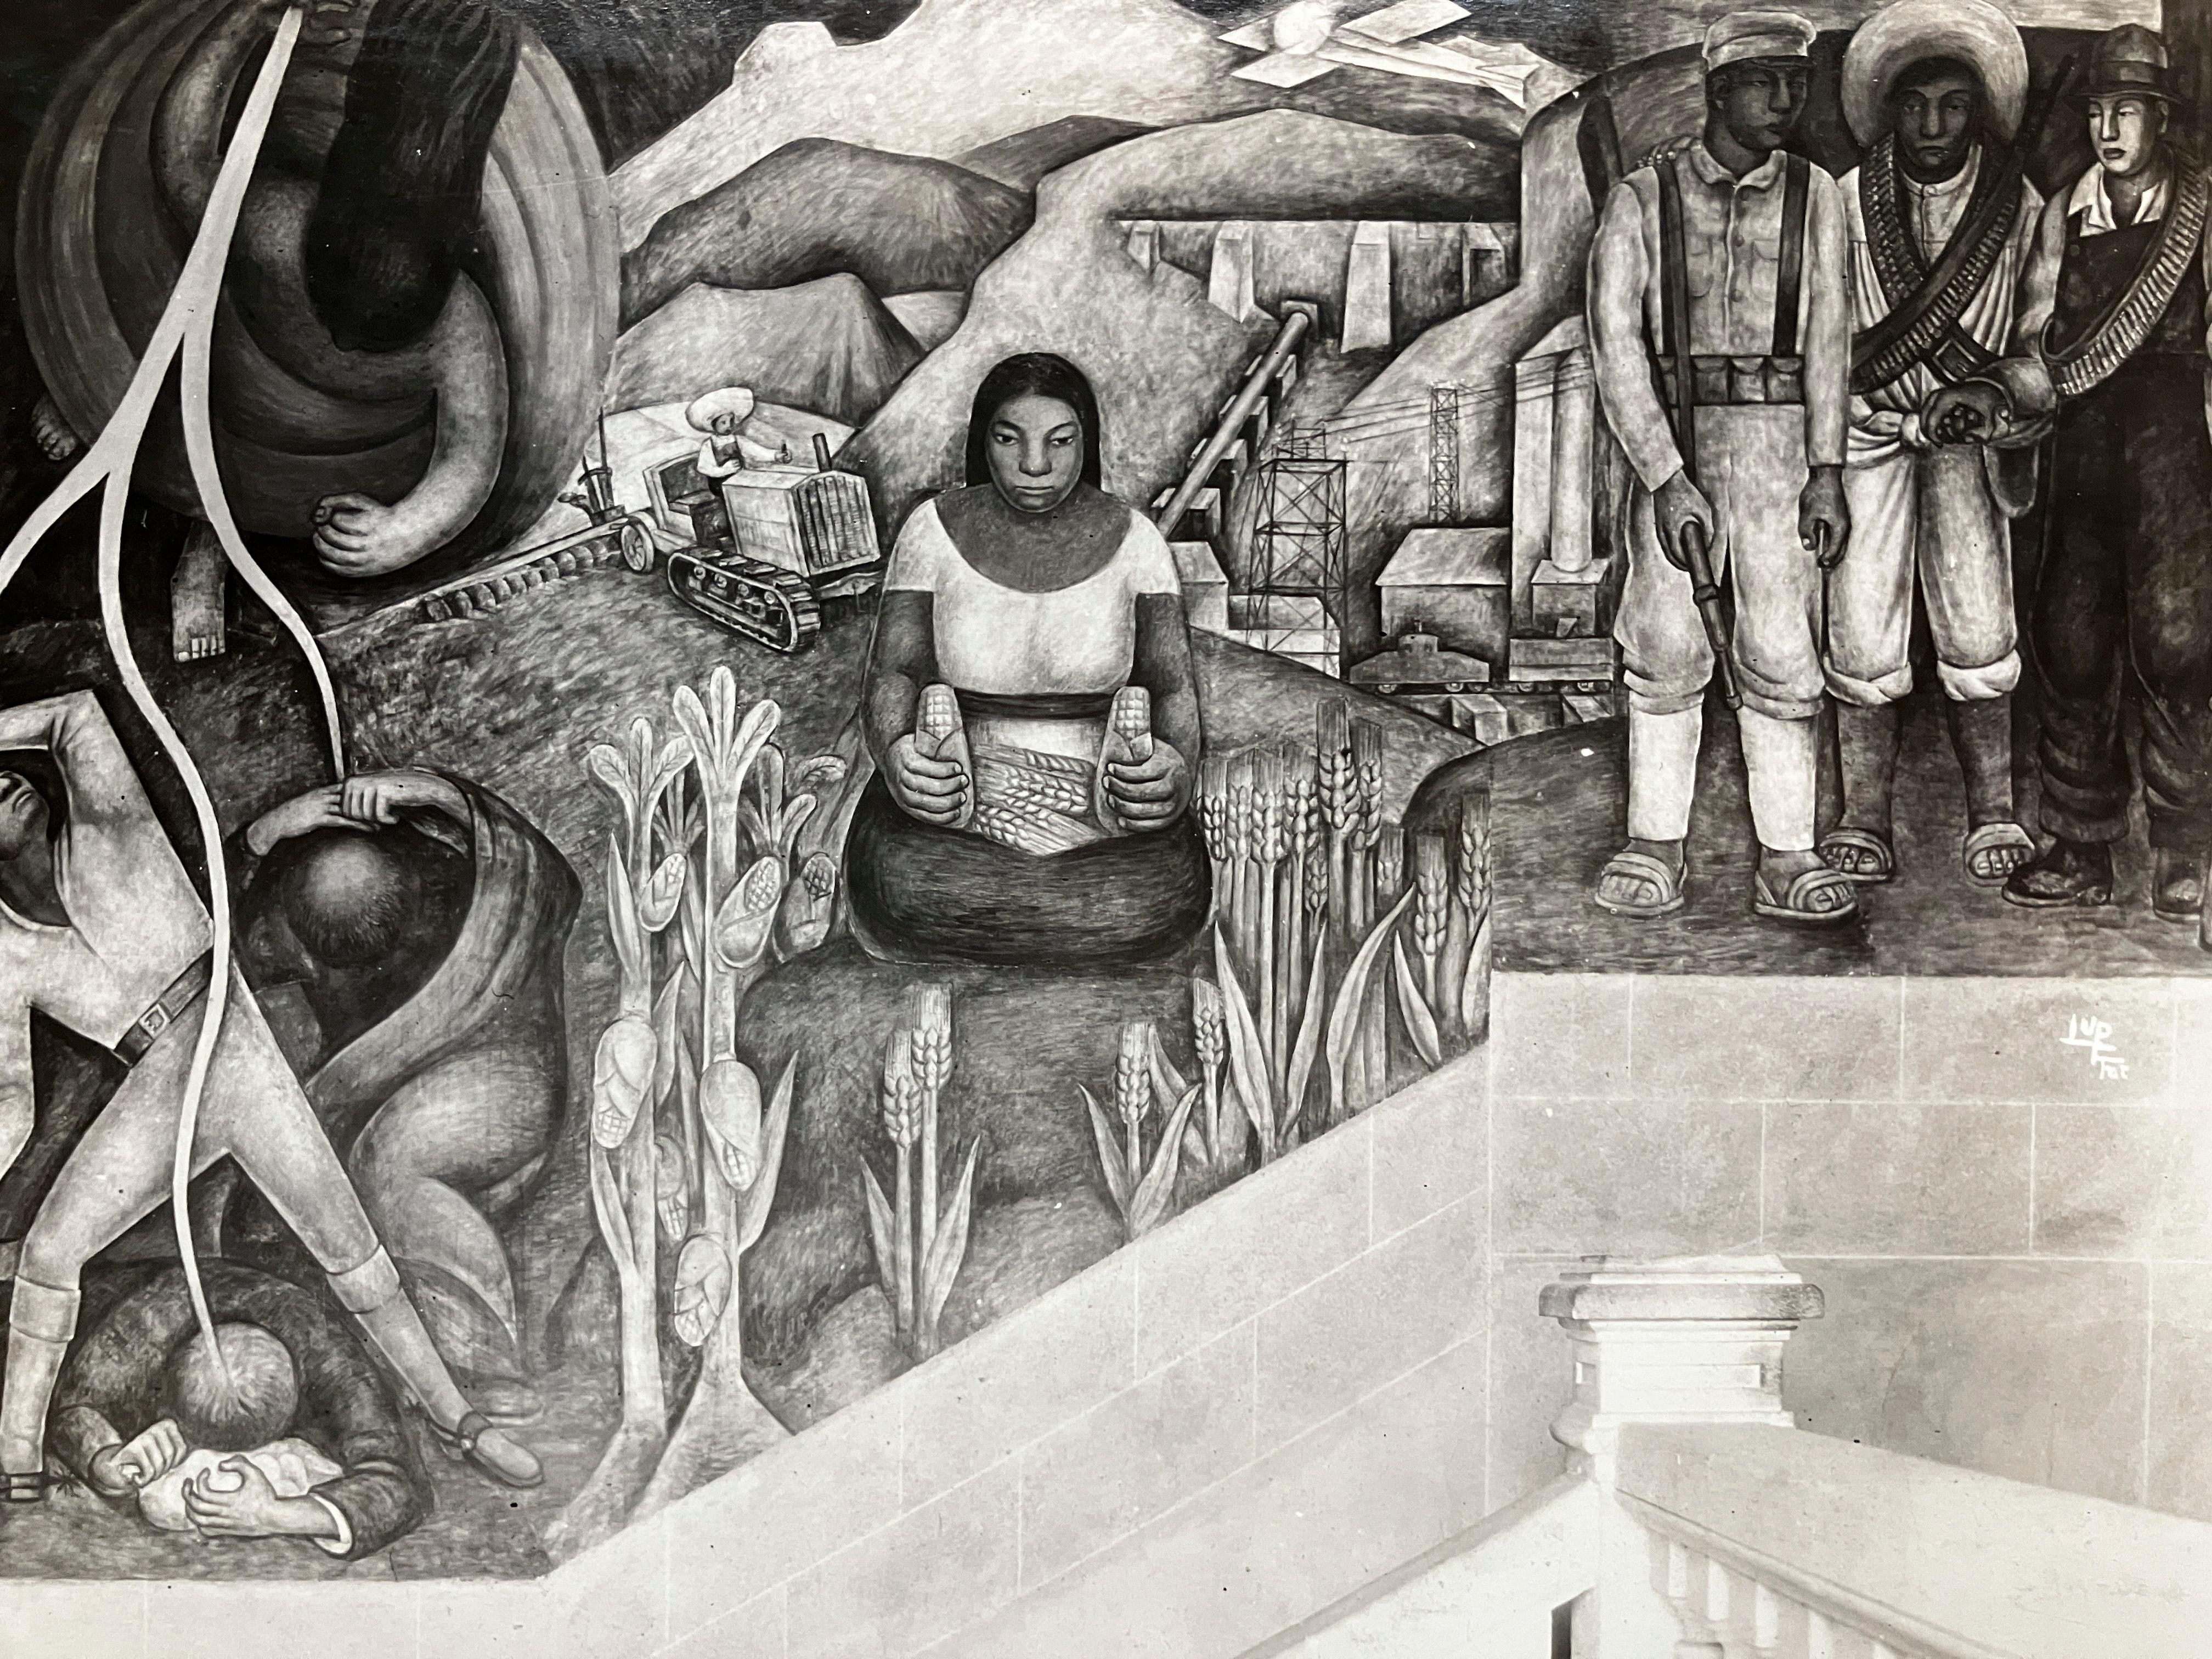 Ein Original-Silbergelatineabzug der Fotografin Tina Modotti aus den 1920er Jahren von dem Wandgemälde von Diego Rivera  "Der Blitz schlägt die zerstörerischen Kräfte in der Gesellschaft nieder - Mutter Natur, Harmonie zwischen Landarbeiter,